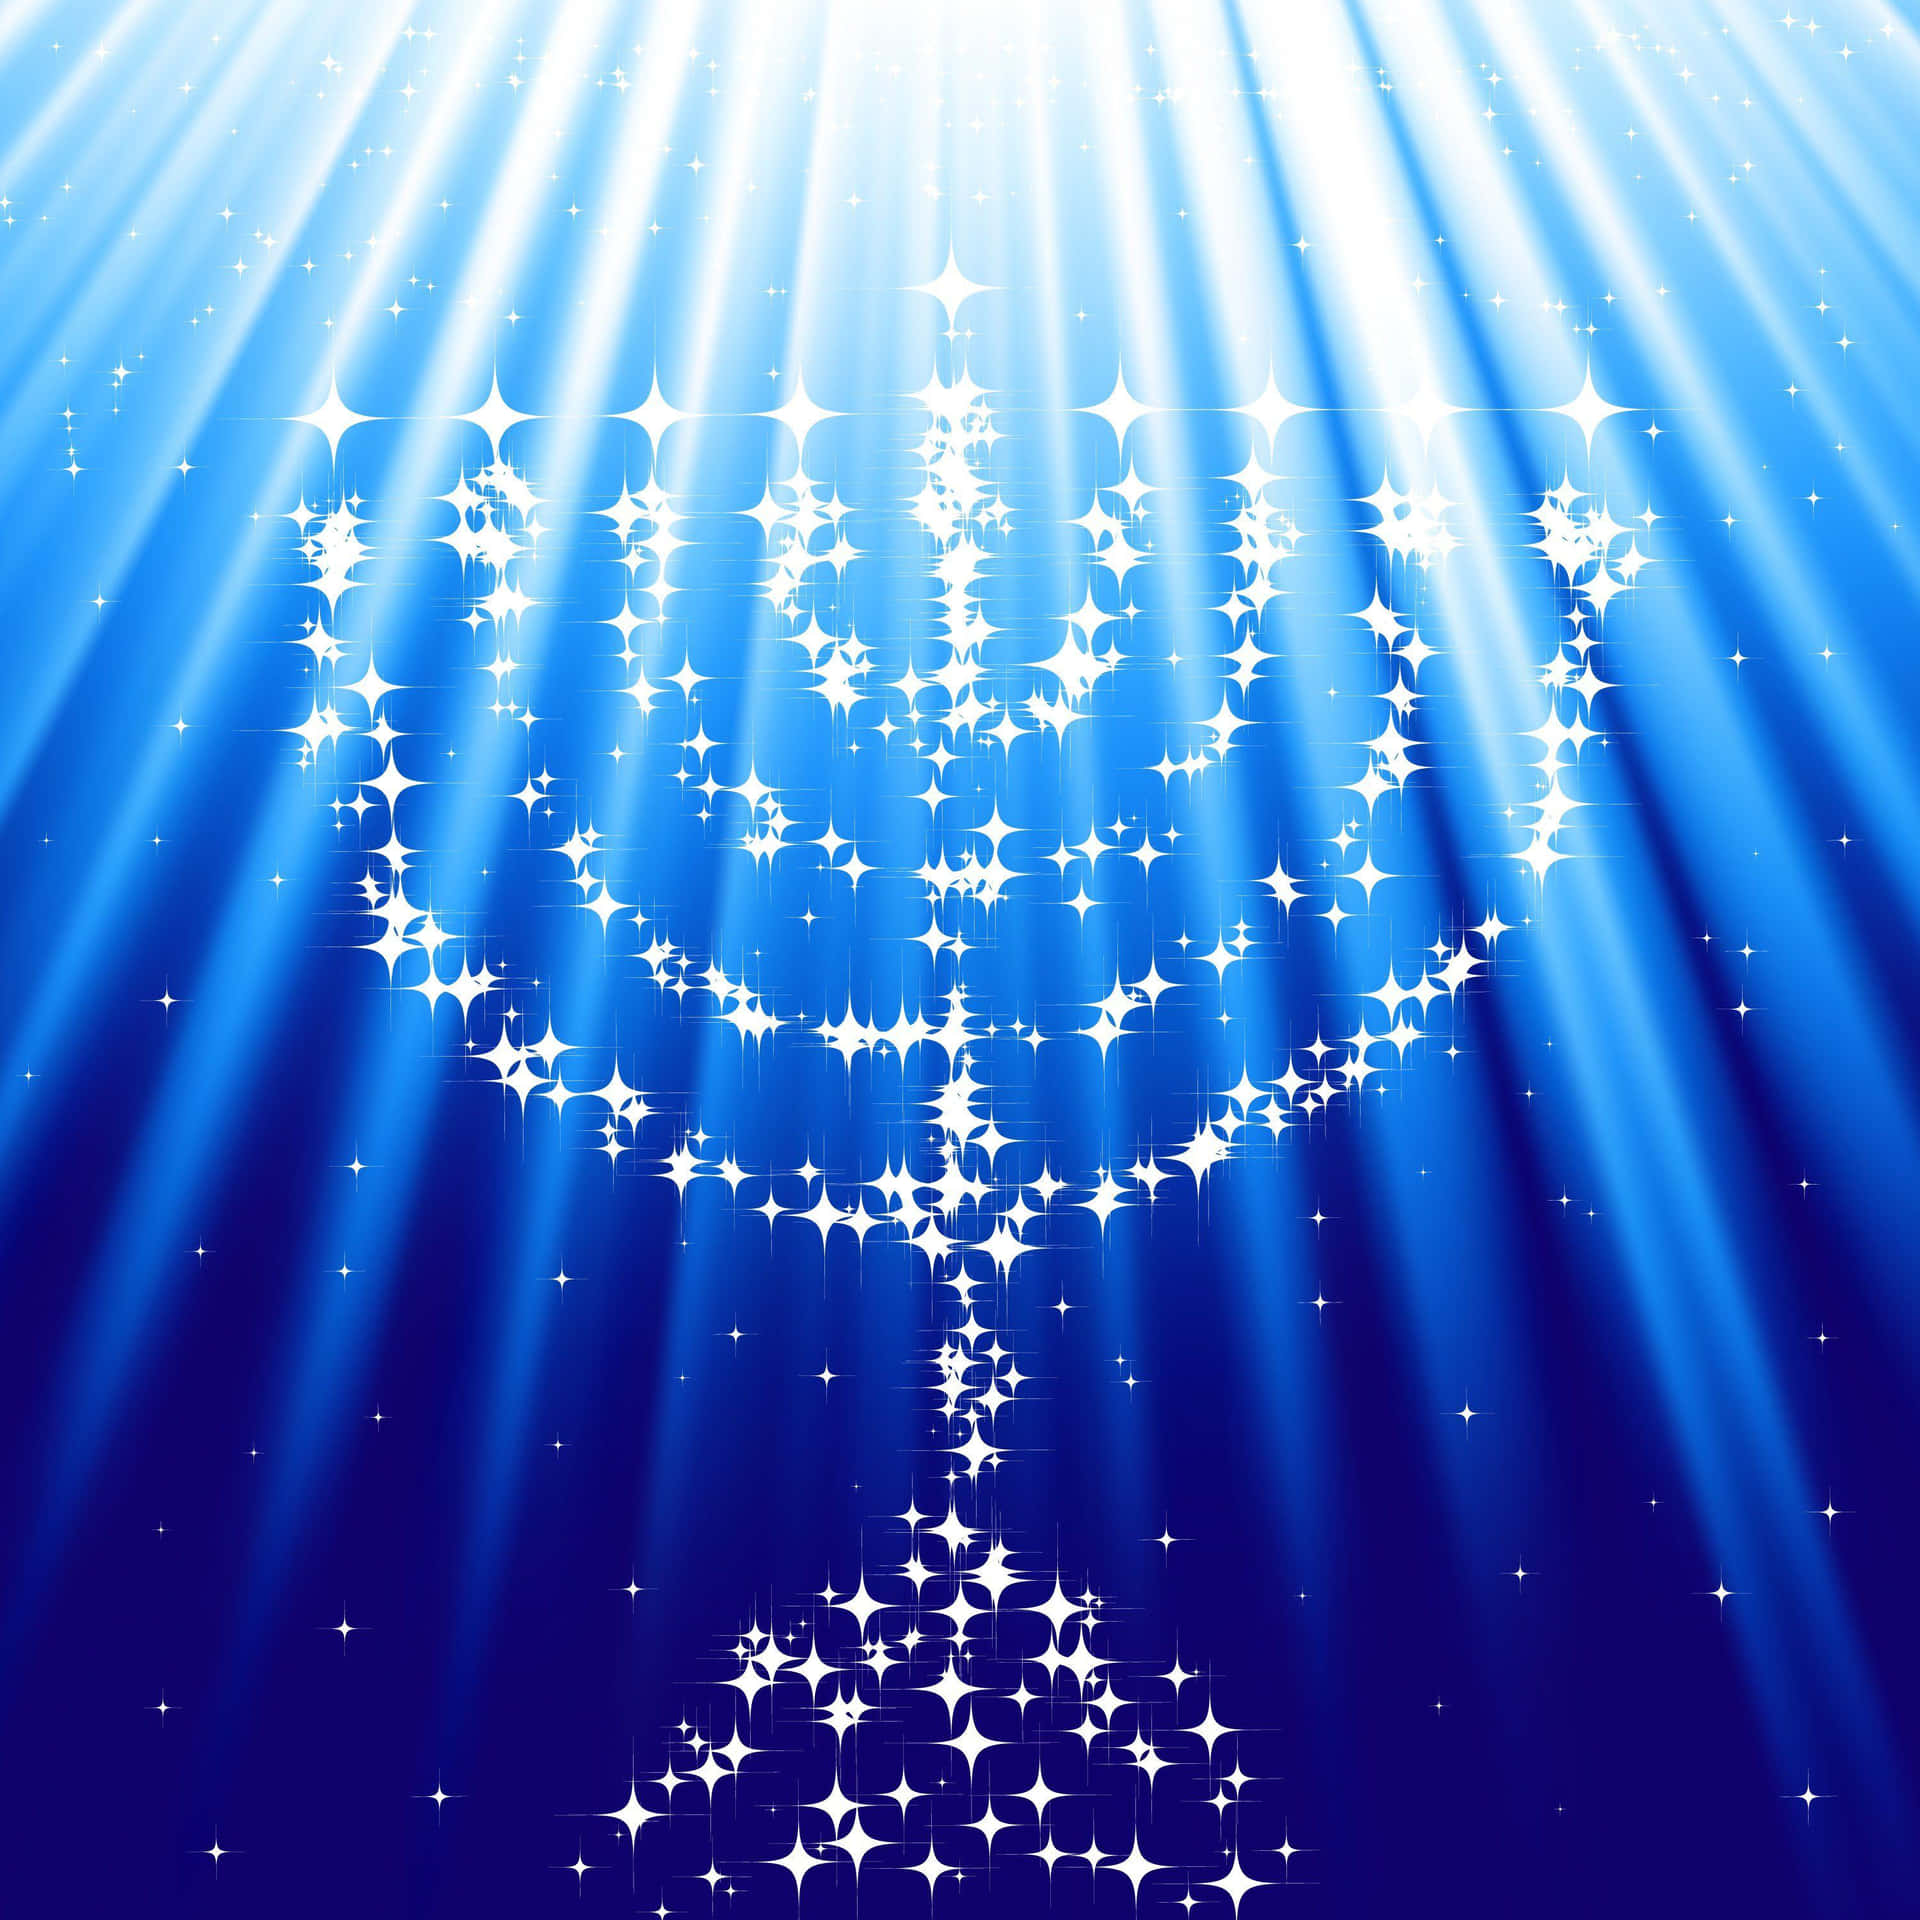 Illuminala Tua Celebrazione Di Chanukah!